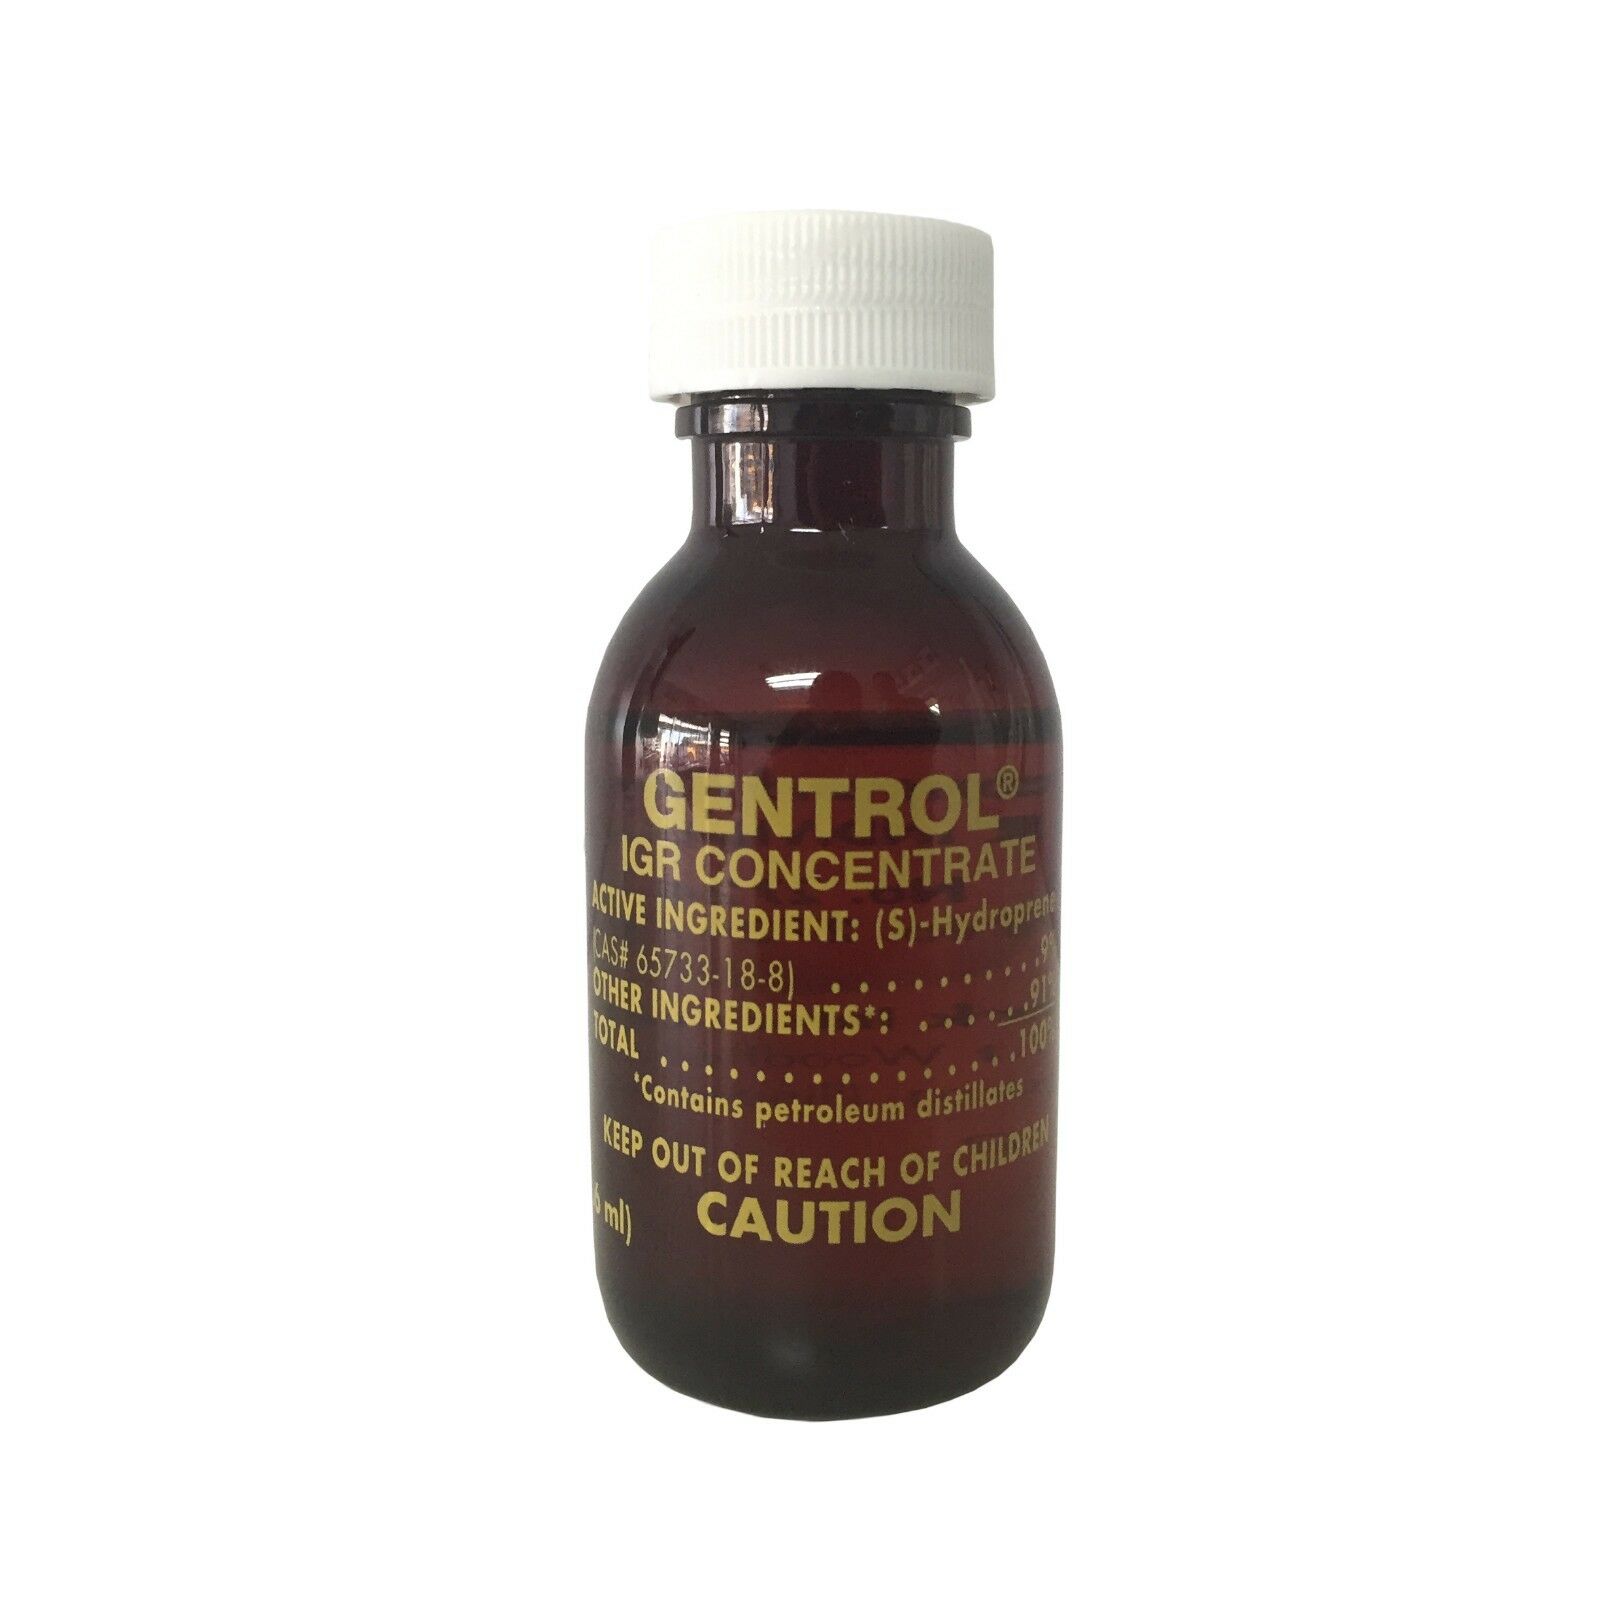 Gentrol Igr Concentrate 1 Oz Bottle